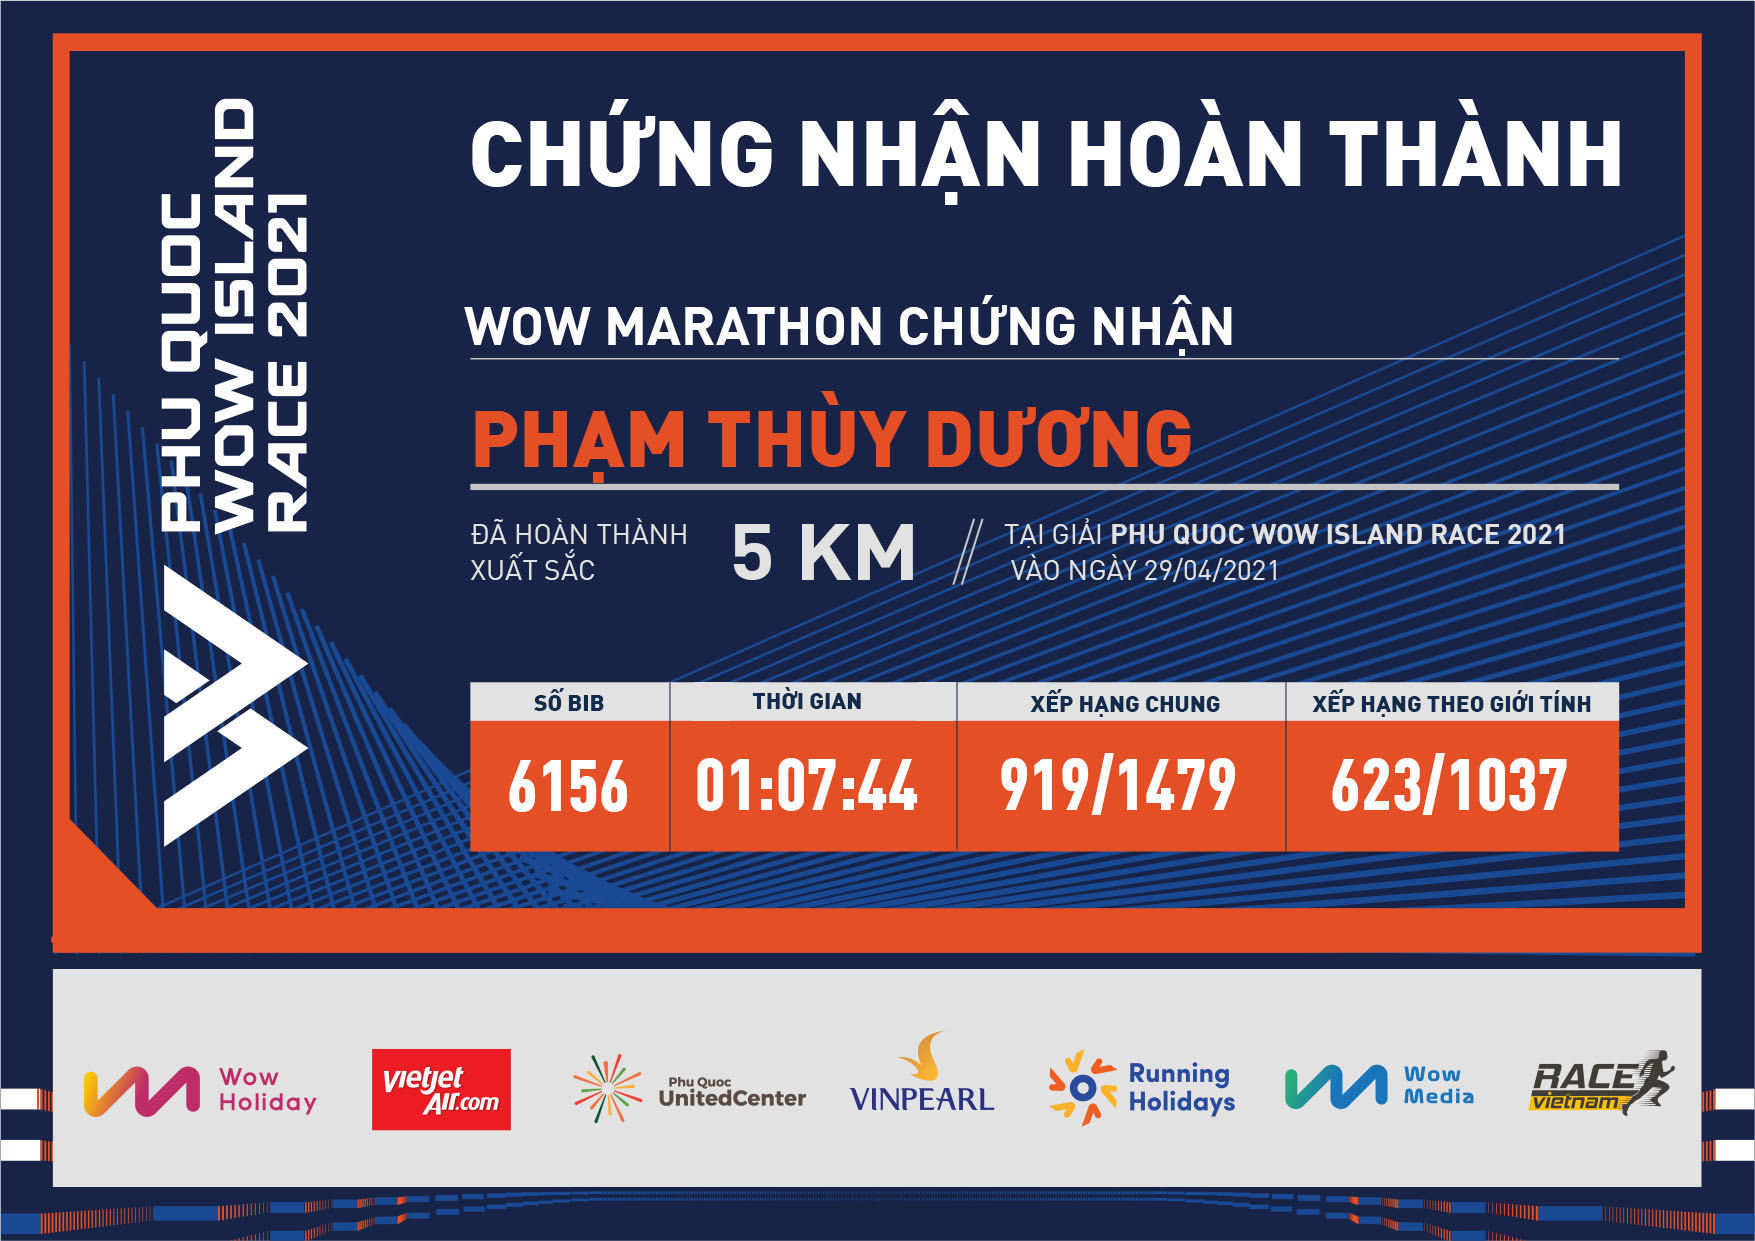 6156 - Phạm Thùy Dương